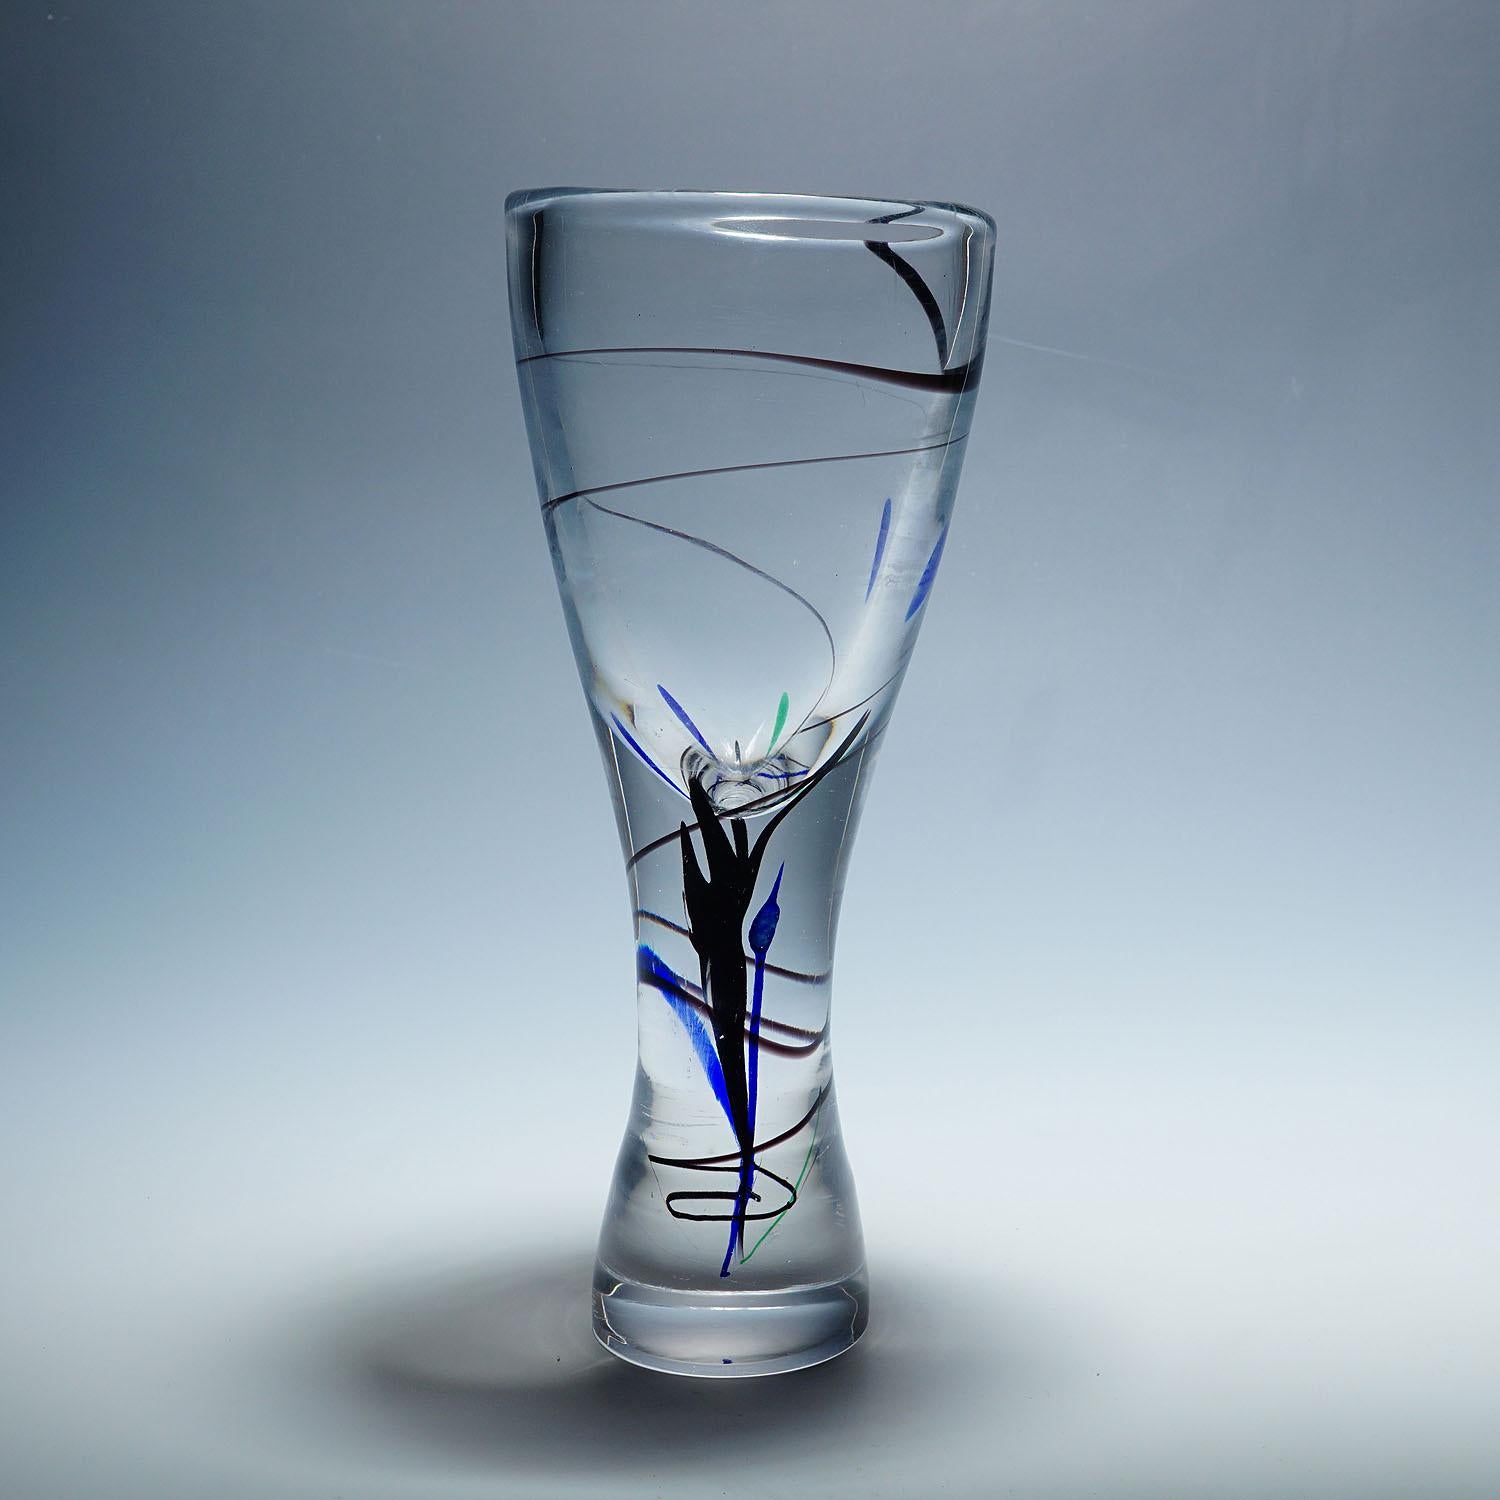 Vase de la série Abstracta, Vicke Lindstrand pour Kosta, Suède années 1950

Un vase en verre d'art vintage de la série Abstracta. Conçue par Vicke Lindstrand et fabriquée par Kosta Glasbruk 1950s. Le vase présente des inclusions de verre bleu,